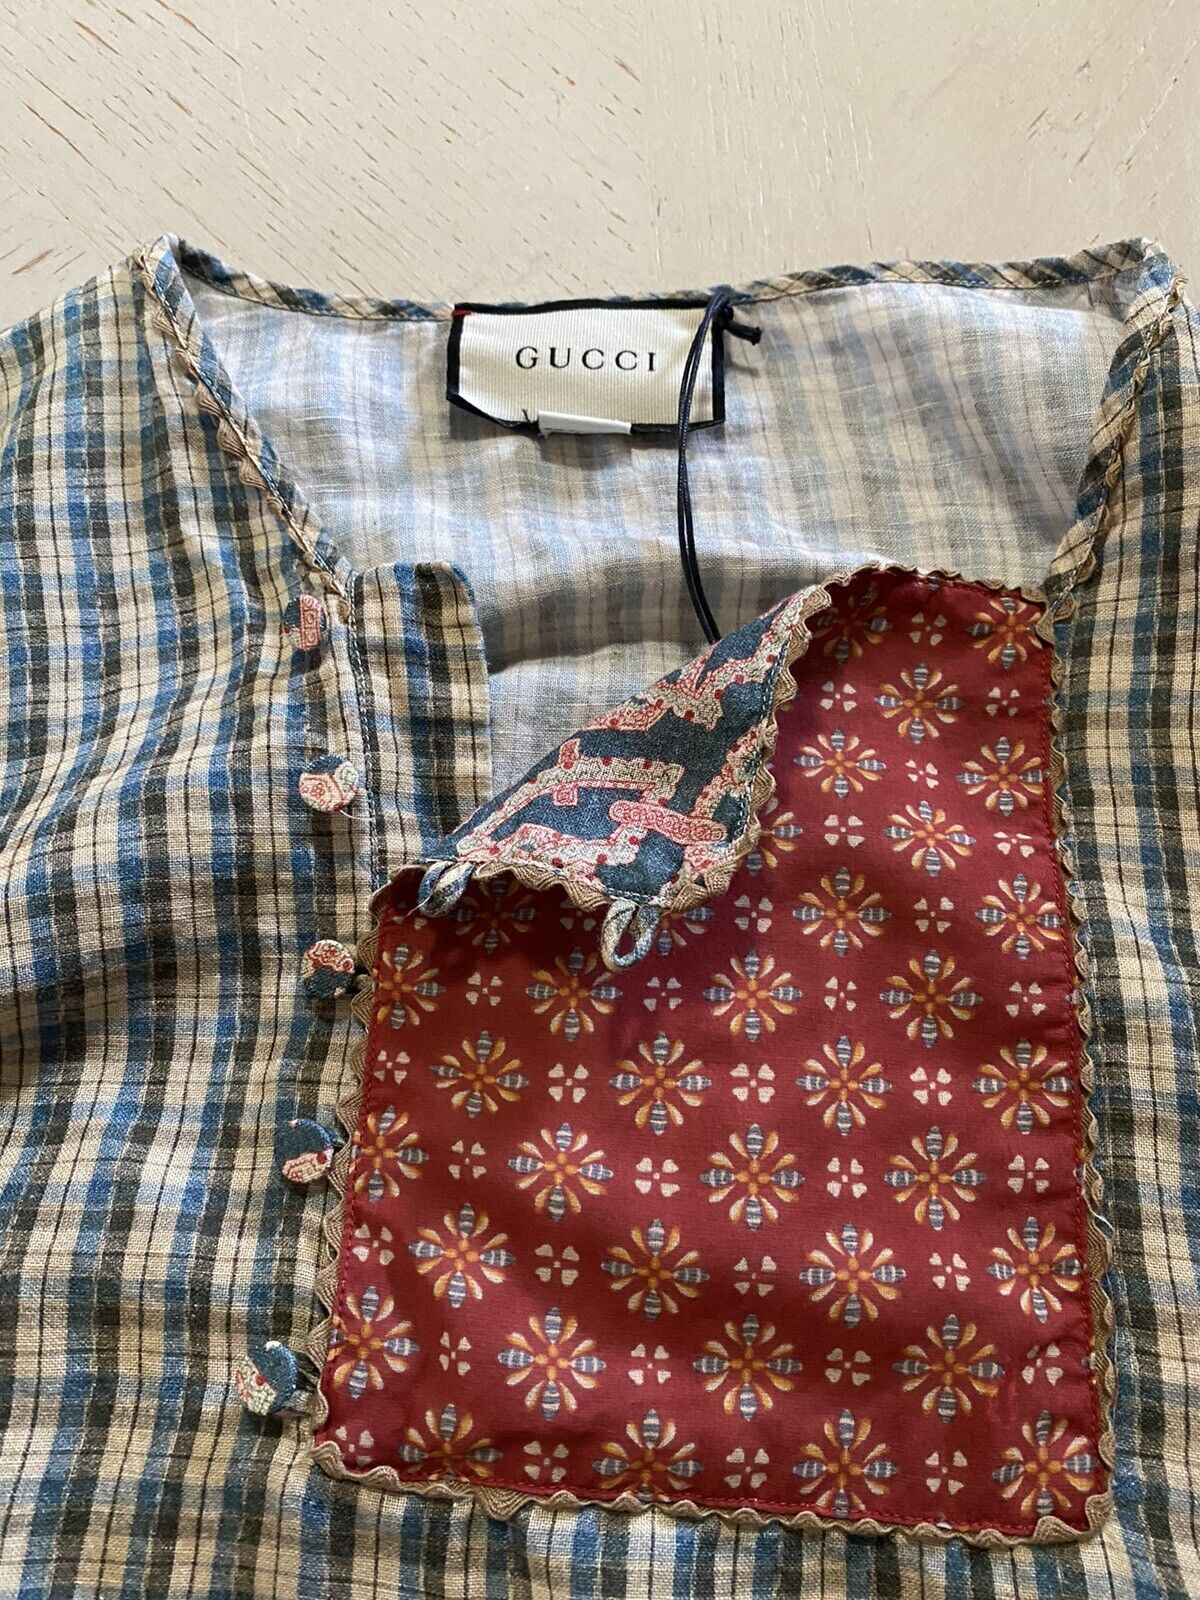 Новая рубашка в клетку Gucci Country Check за 1200 долларов, синяя/красная/зеленая, размер 46, ЕС, Италия